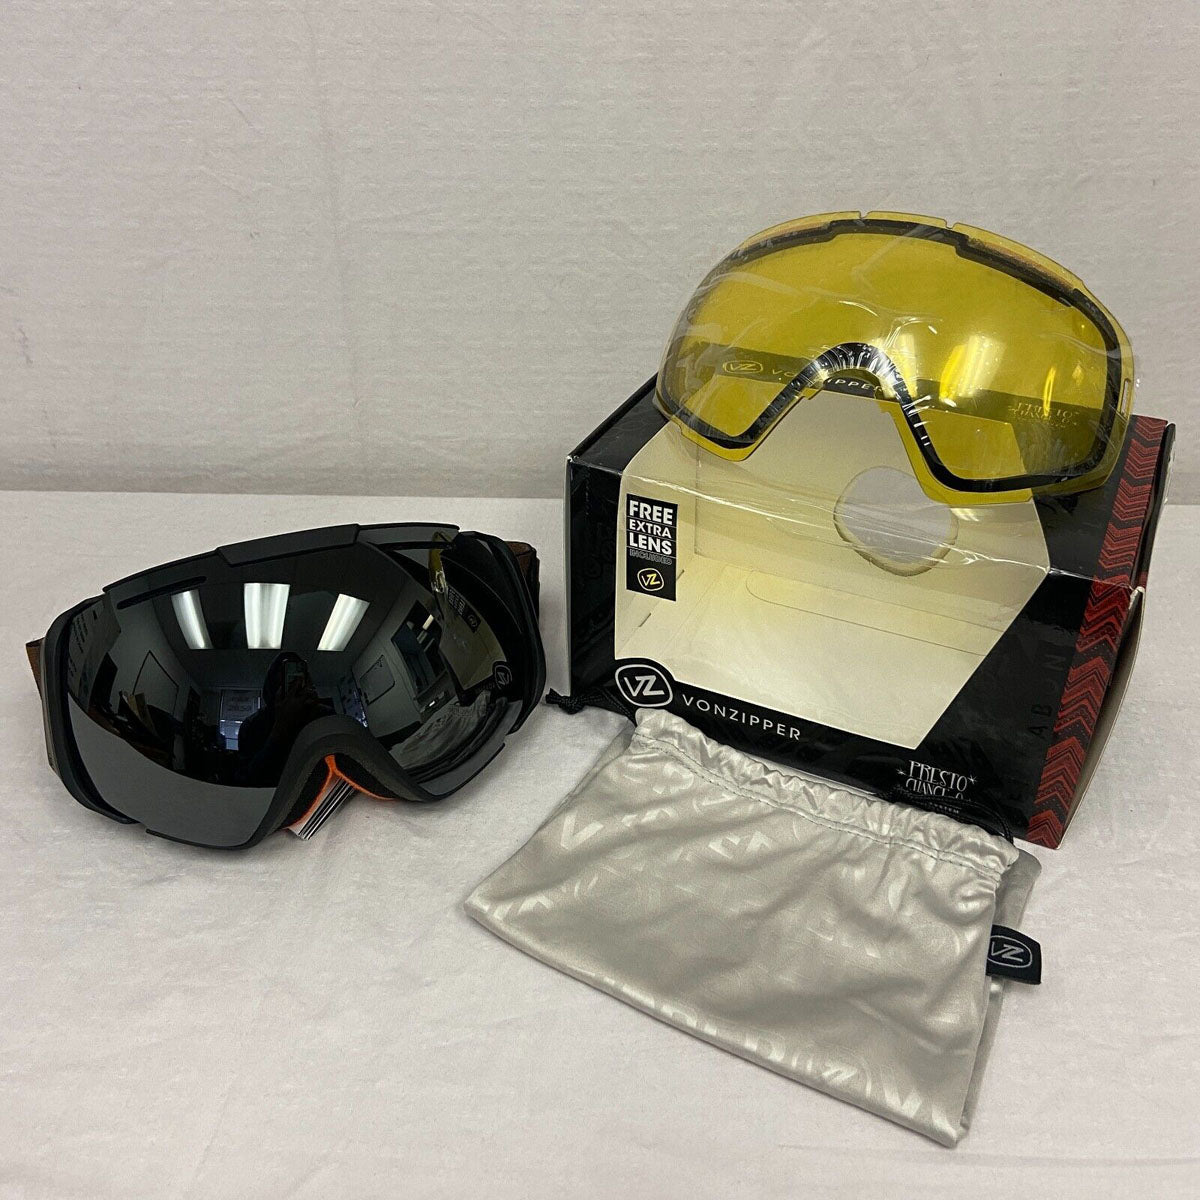 VonZipper El Kabong Snow Goggles - Black Satin Camo / Black Chrome Lens (OPEN-BOX) - ExtremeSupply.com